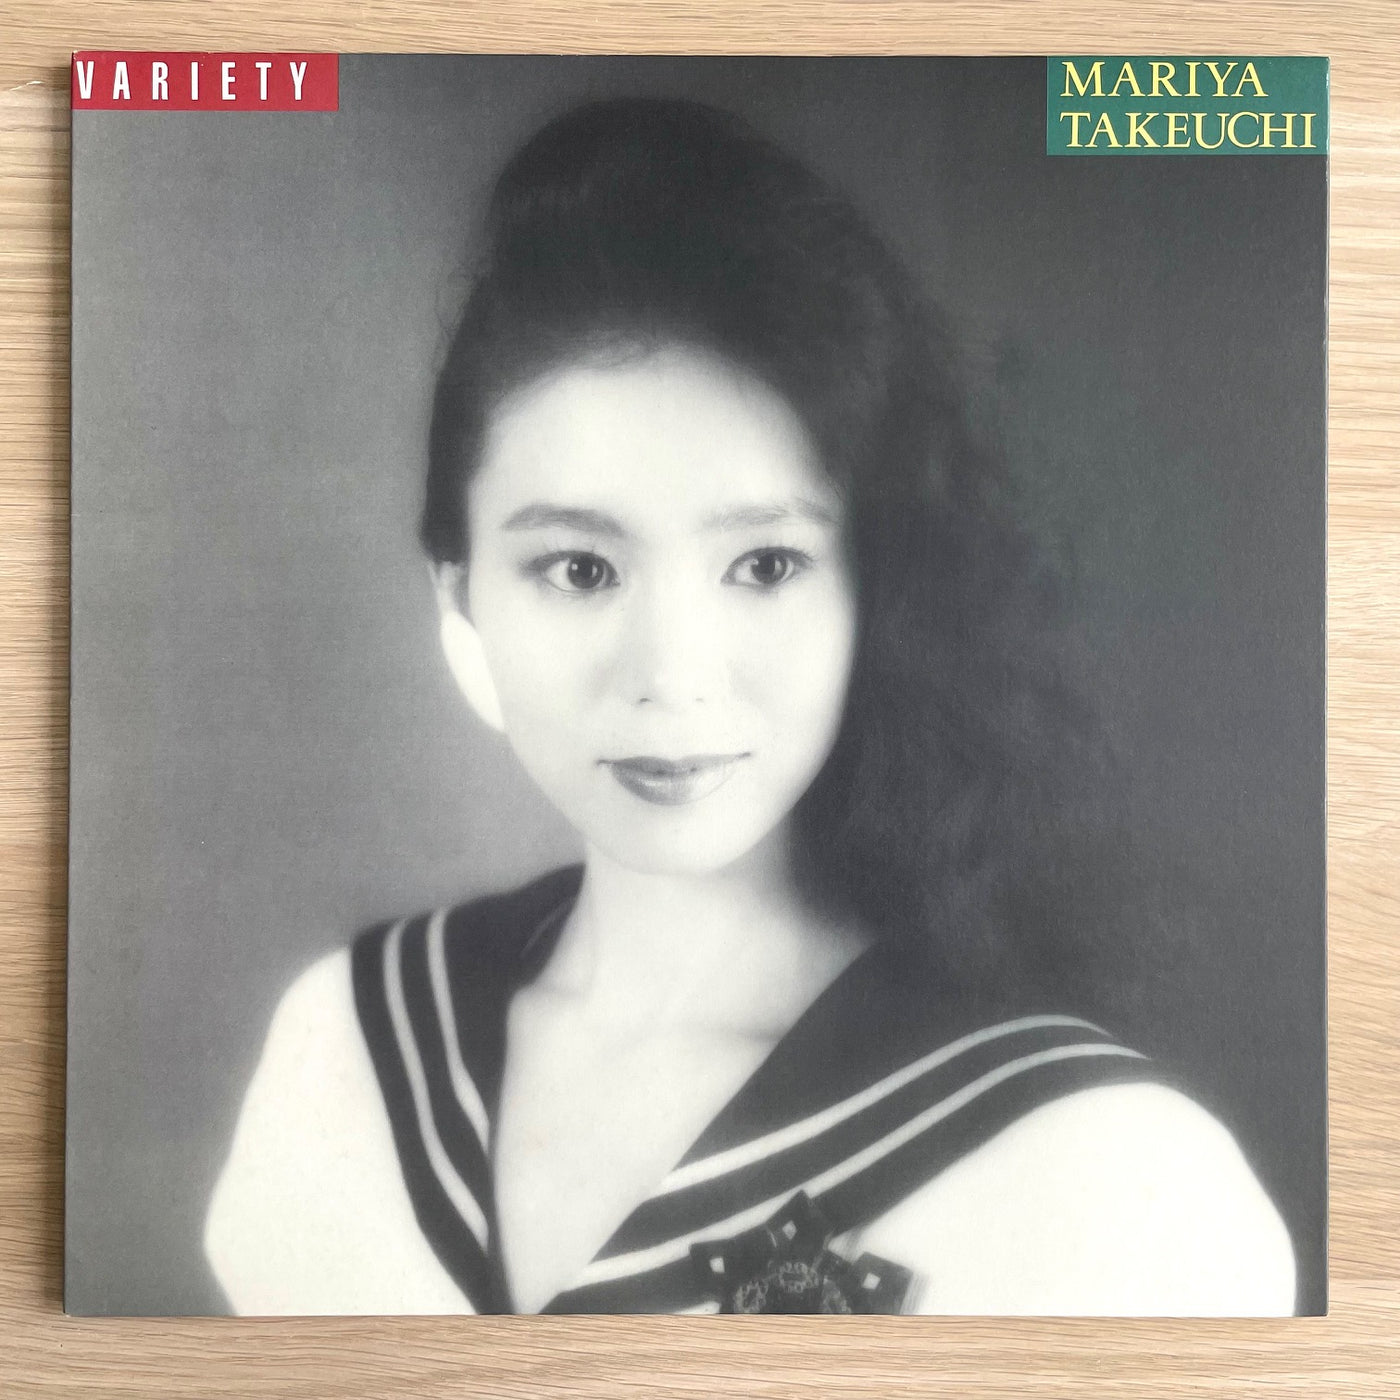 竹内まりや / VARIETY (LP) – fastcut records